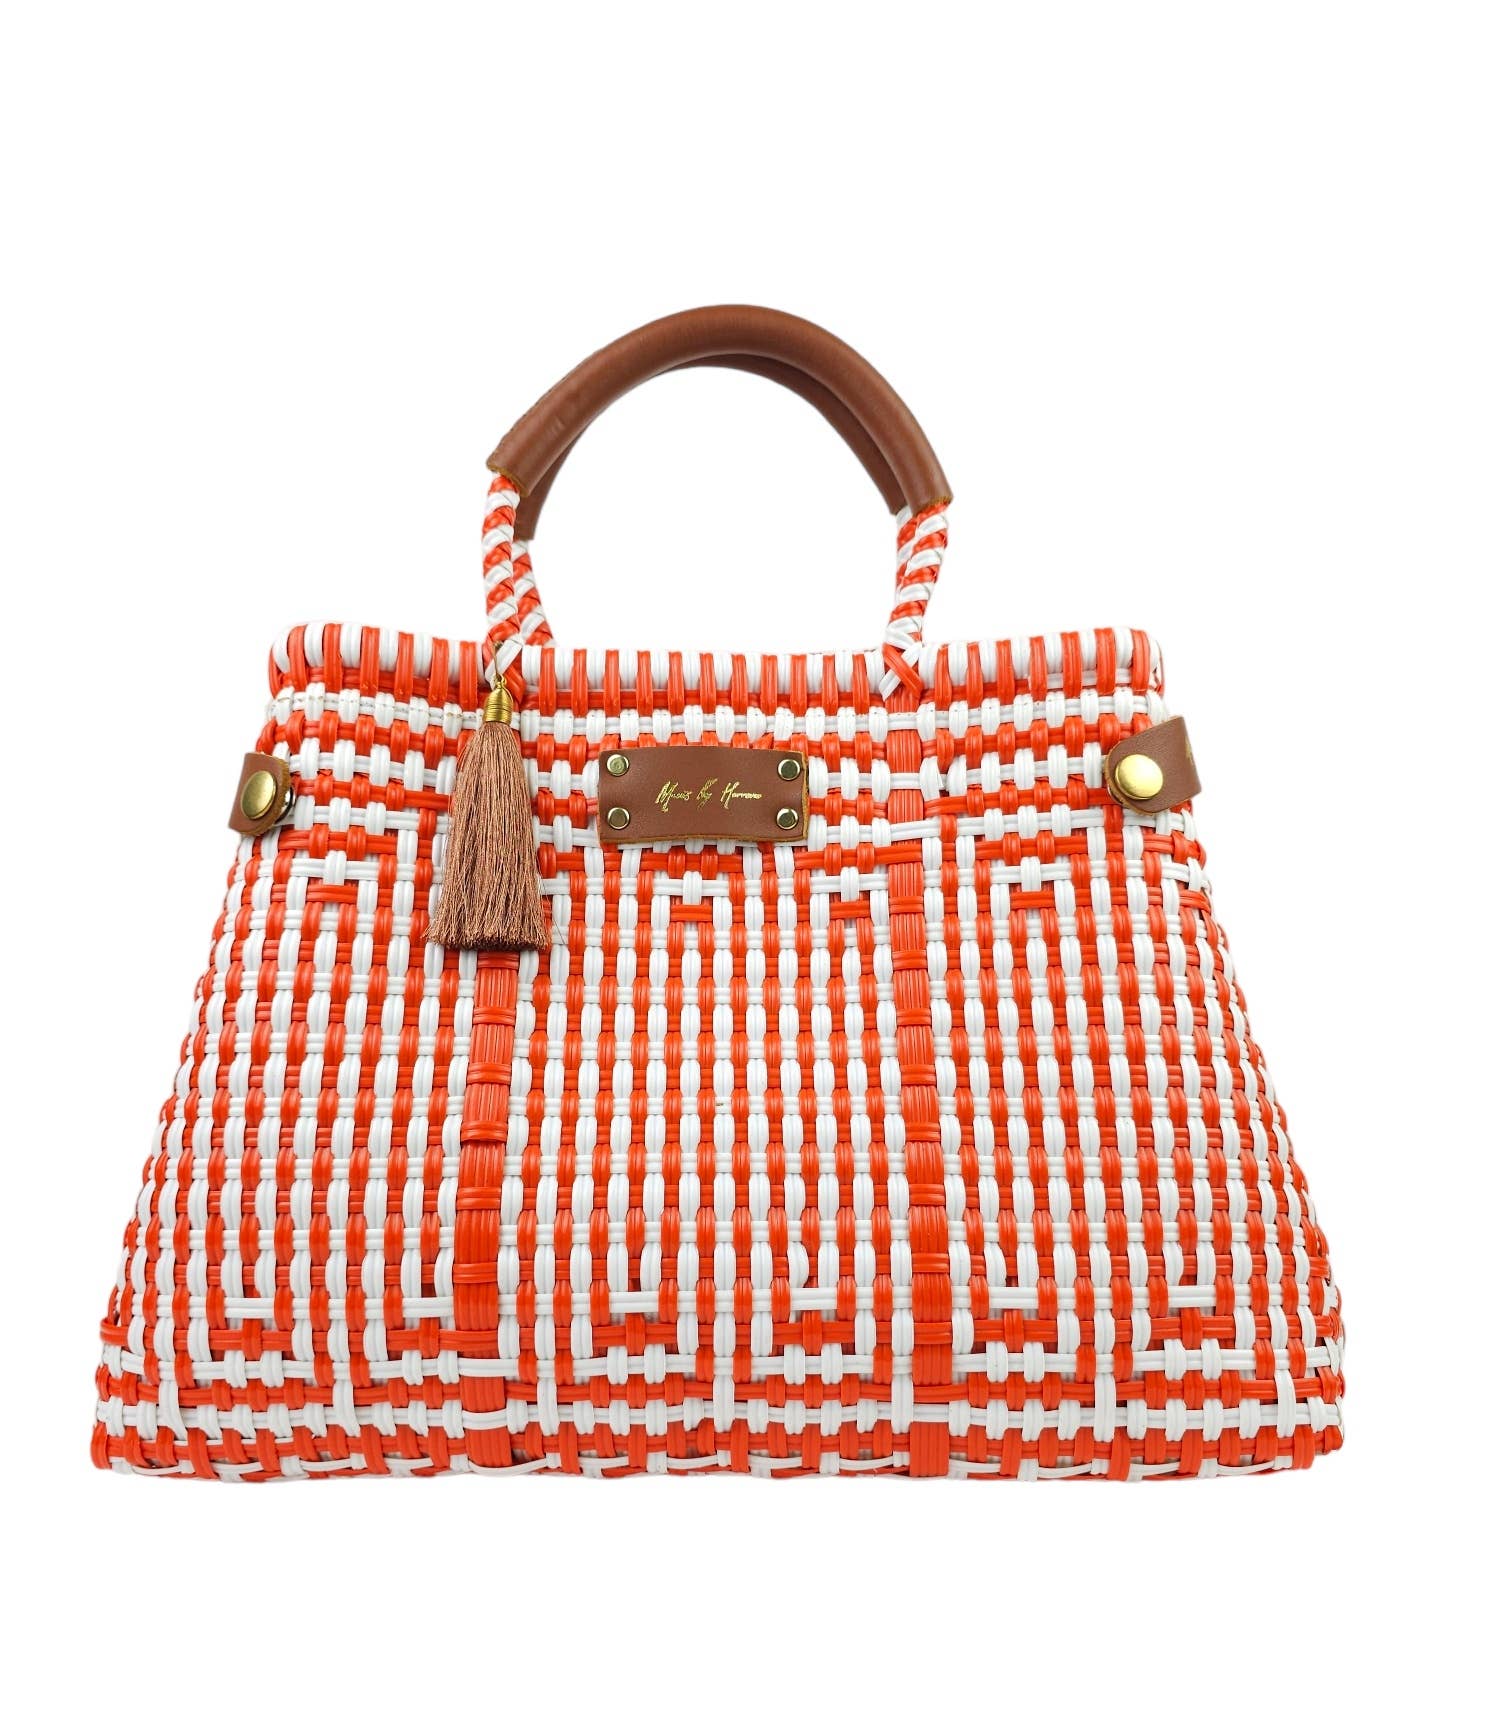 Mavis by Herrera Sustainable Tangerine Handbag